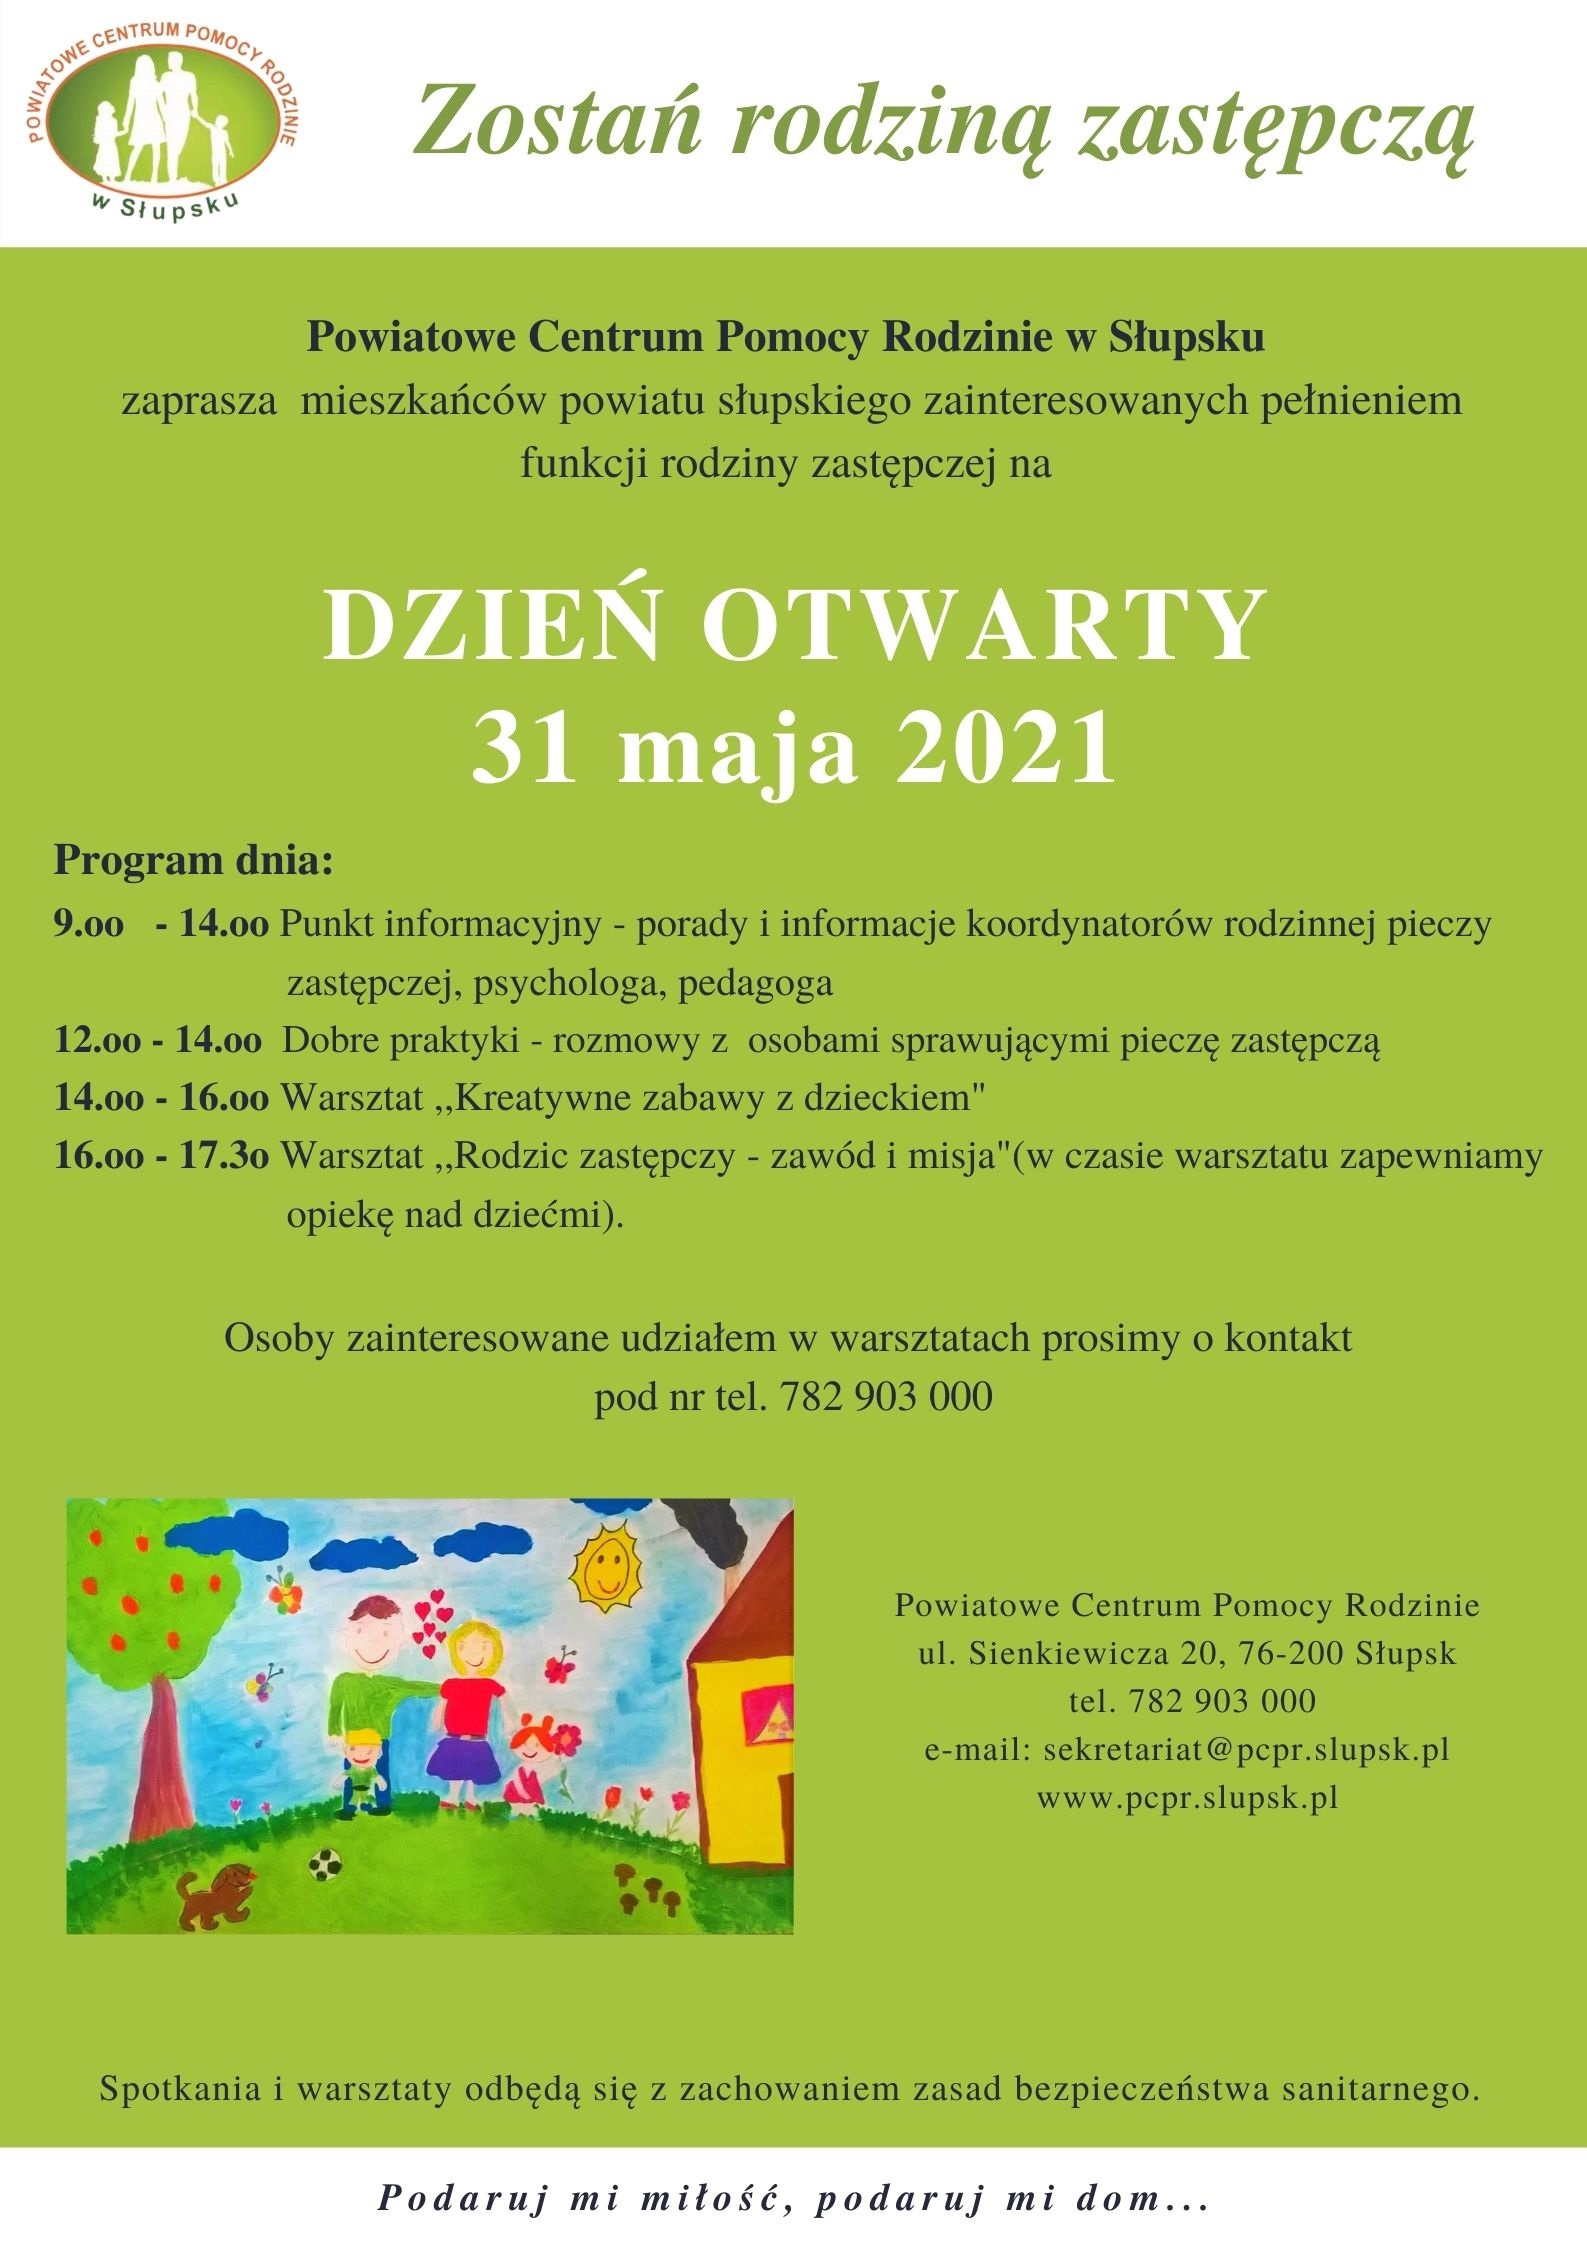 Ogłoszenie o dniu otwartym w PCPR w Słupsku podczas, którego odbędą się warsztaty dla osób zainteresowanych pełnieniem funkcji rodzin zastępczych